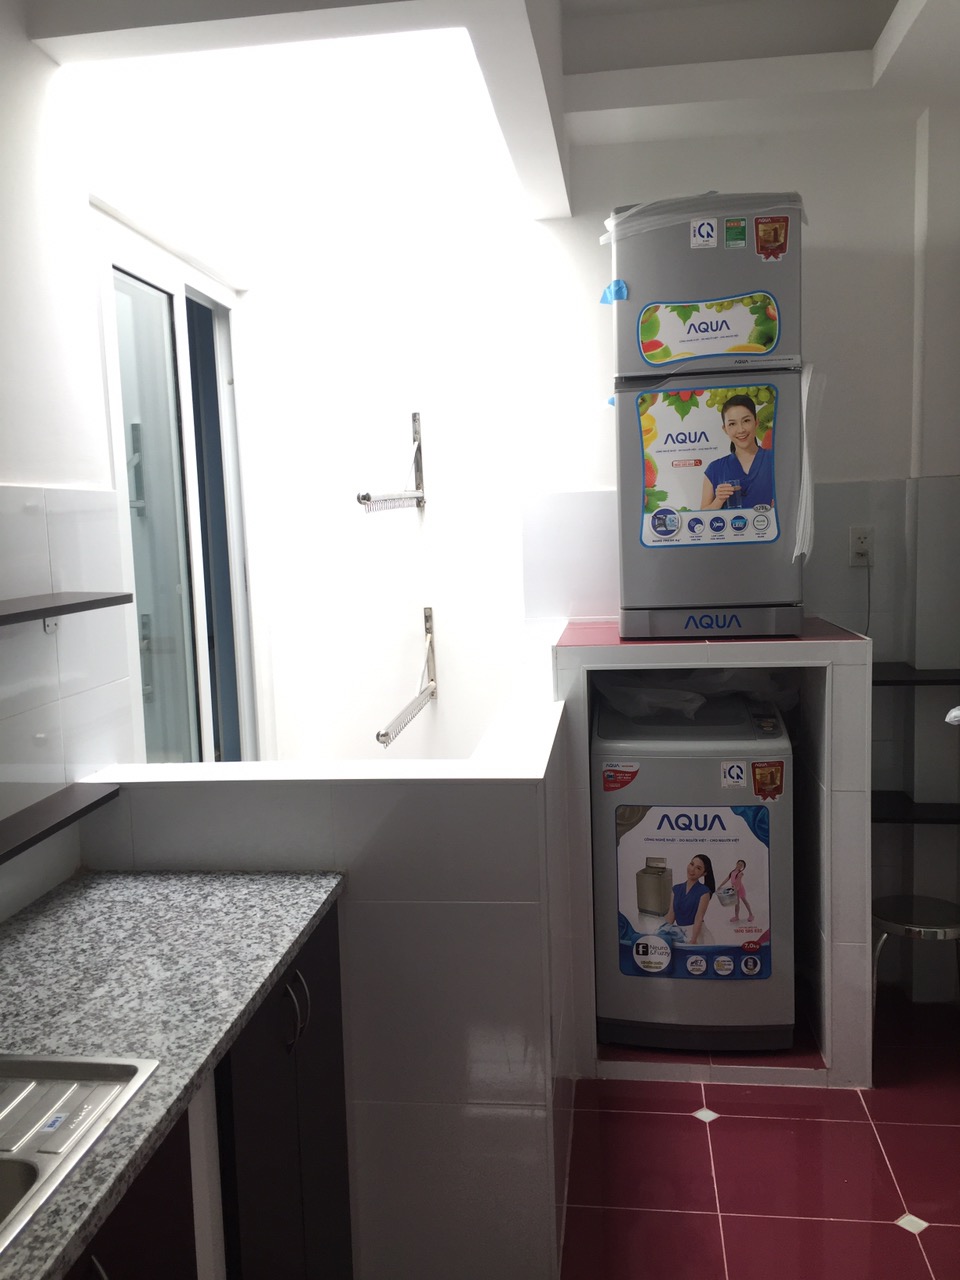 Căn hộ cao cấp ở quận Tân Bình, nội thất 5 sao, có phòng ngủ riêng bếp riêng, nhà an ninh